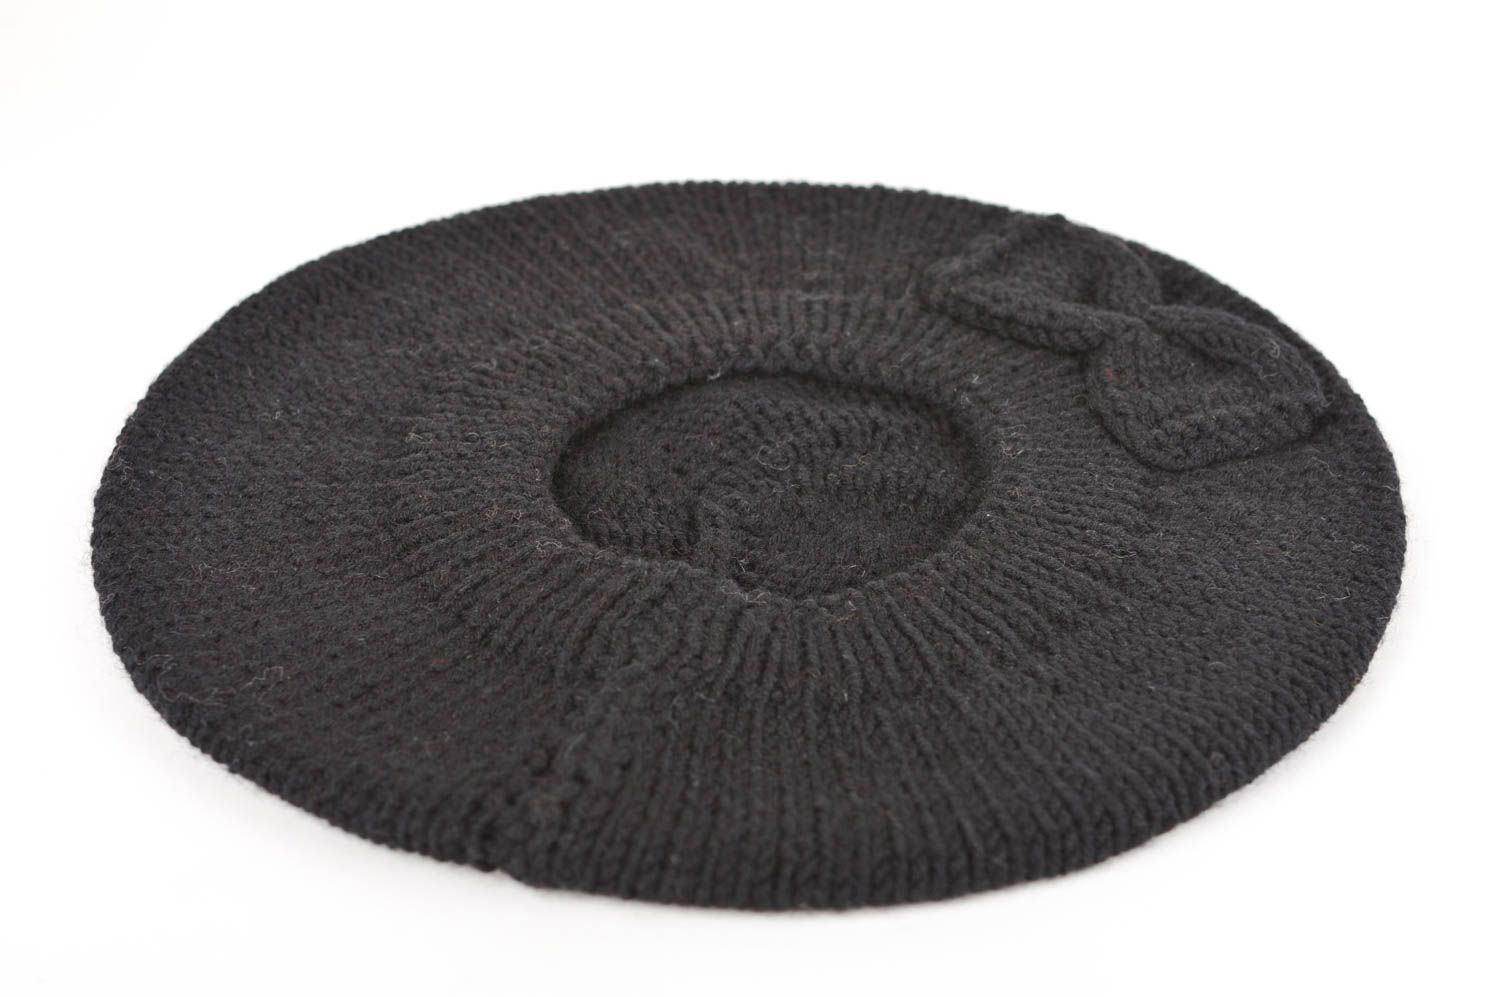 Béret au tricot fait main Chapeau chaud Vêtement femme hiver noir coton photo 2